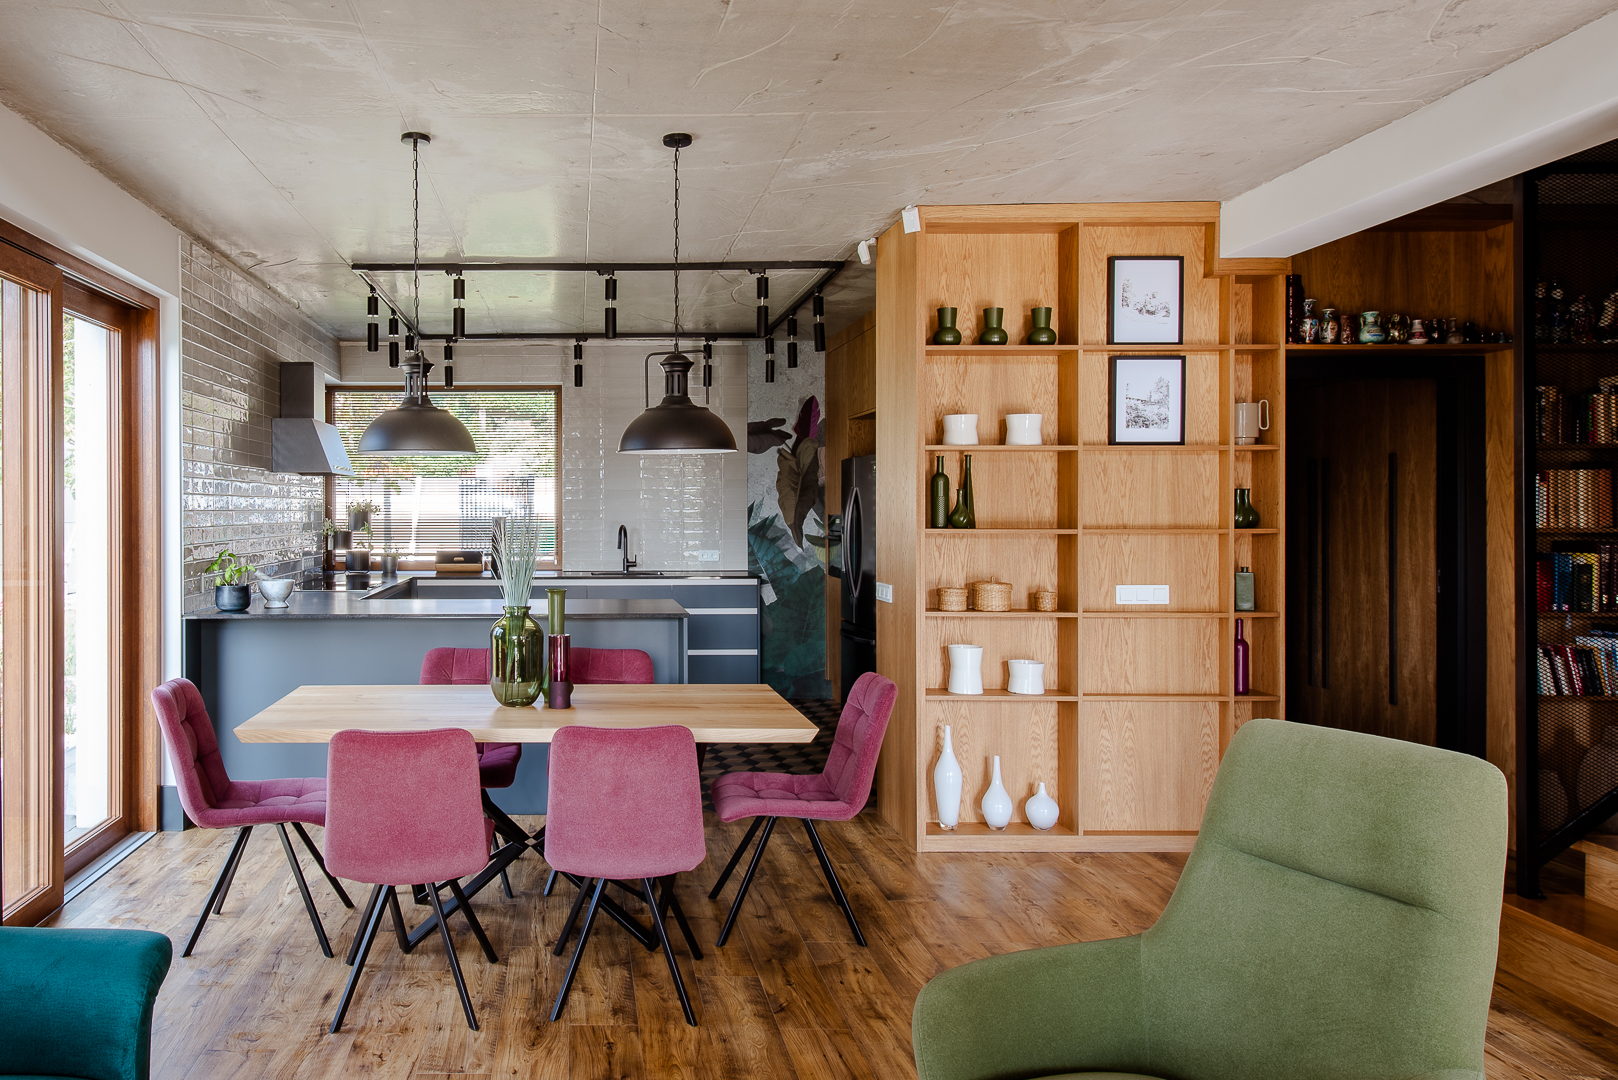  Niebieskoszara kuchnia i kolorowa jadalnia z drewnianym stołem na 6 osób. Projekt wnętrza Joanna Ochota, Archimental. Fot. Joanna Jawor